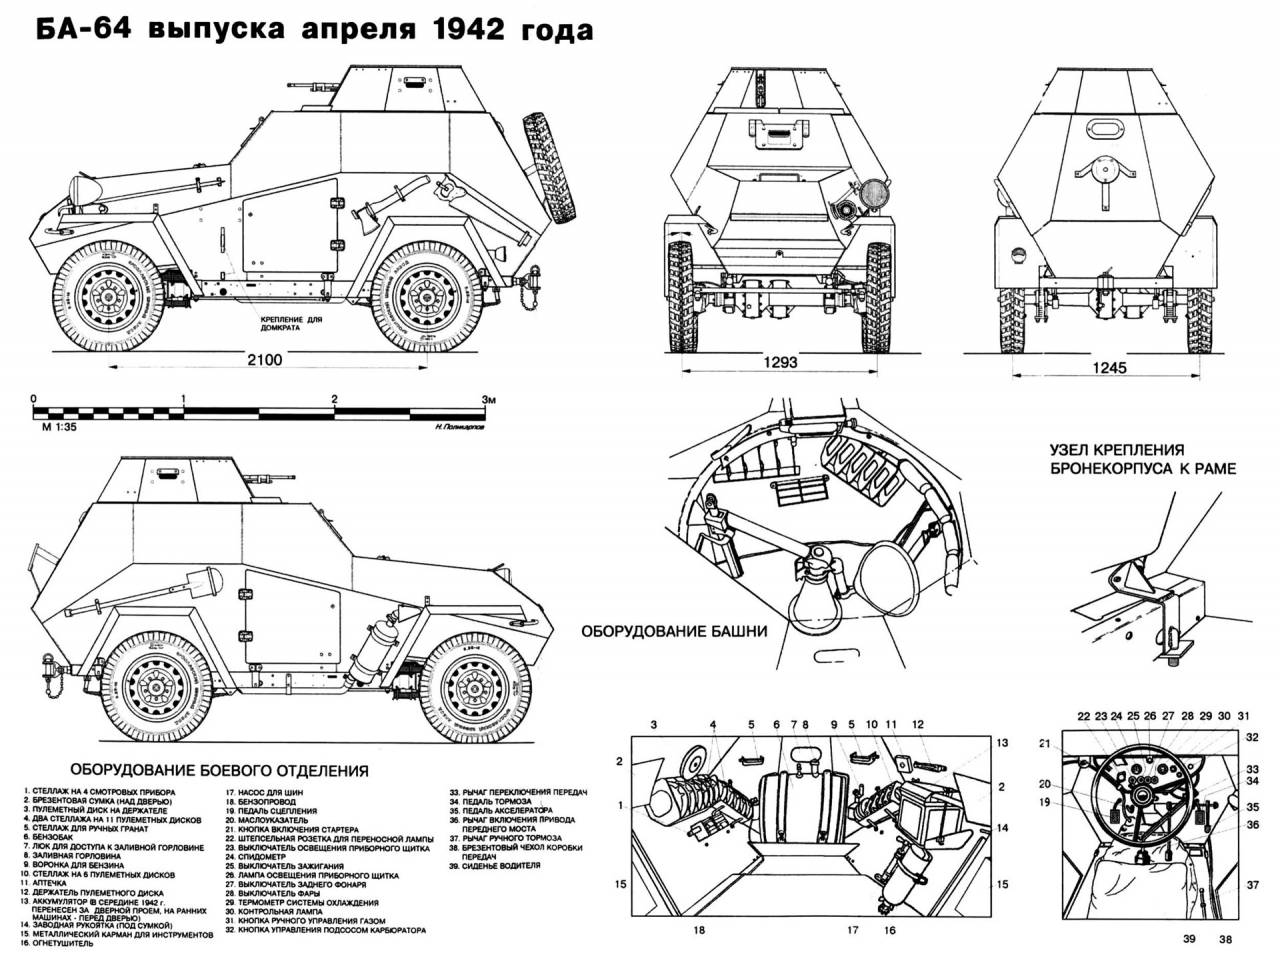 Бронеавтомобиль "тигр": фото, технические характеристики, история создания и модификации :: syl.ru